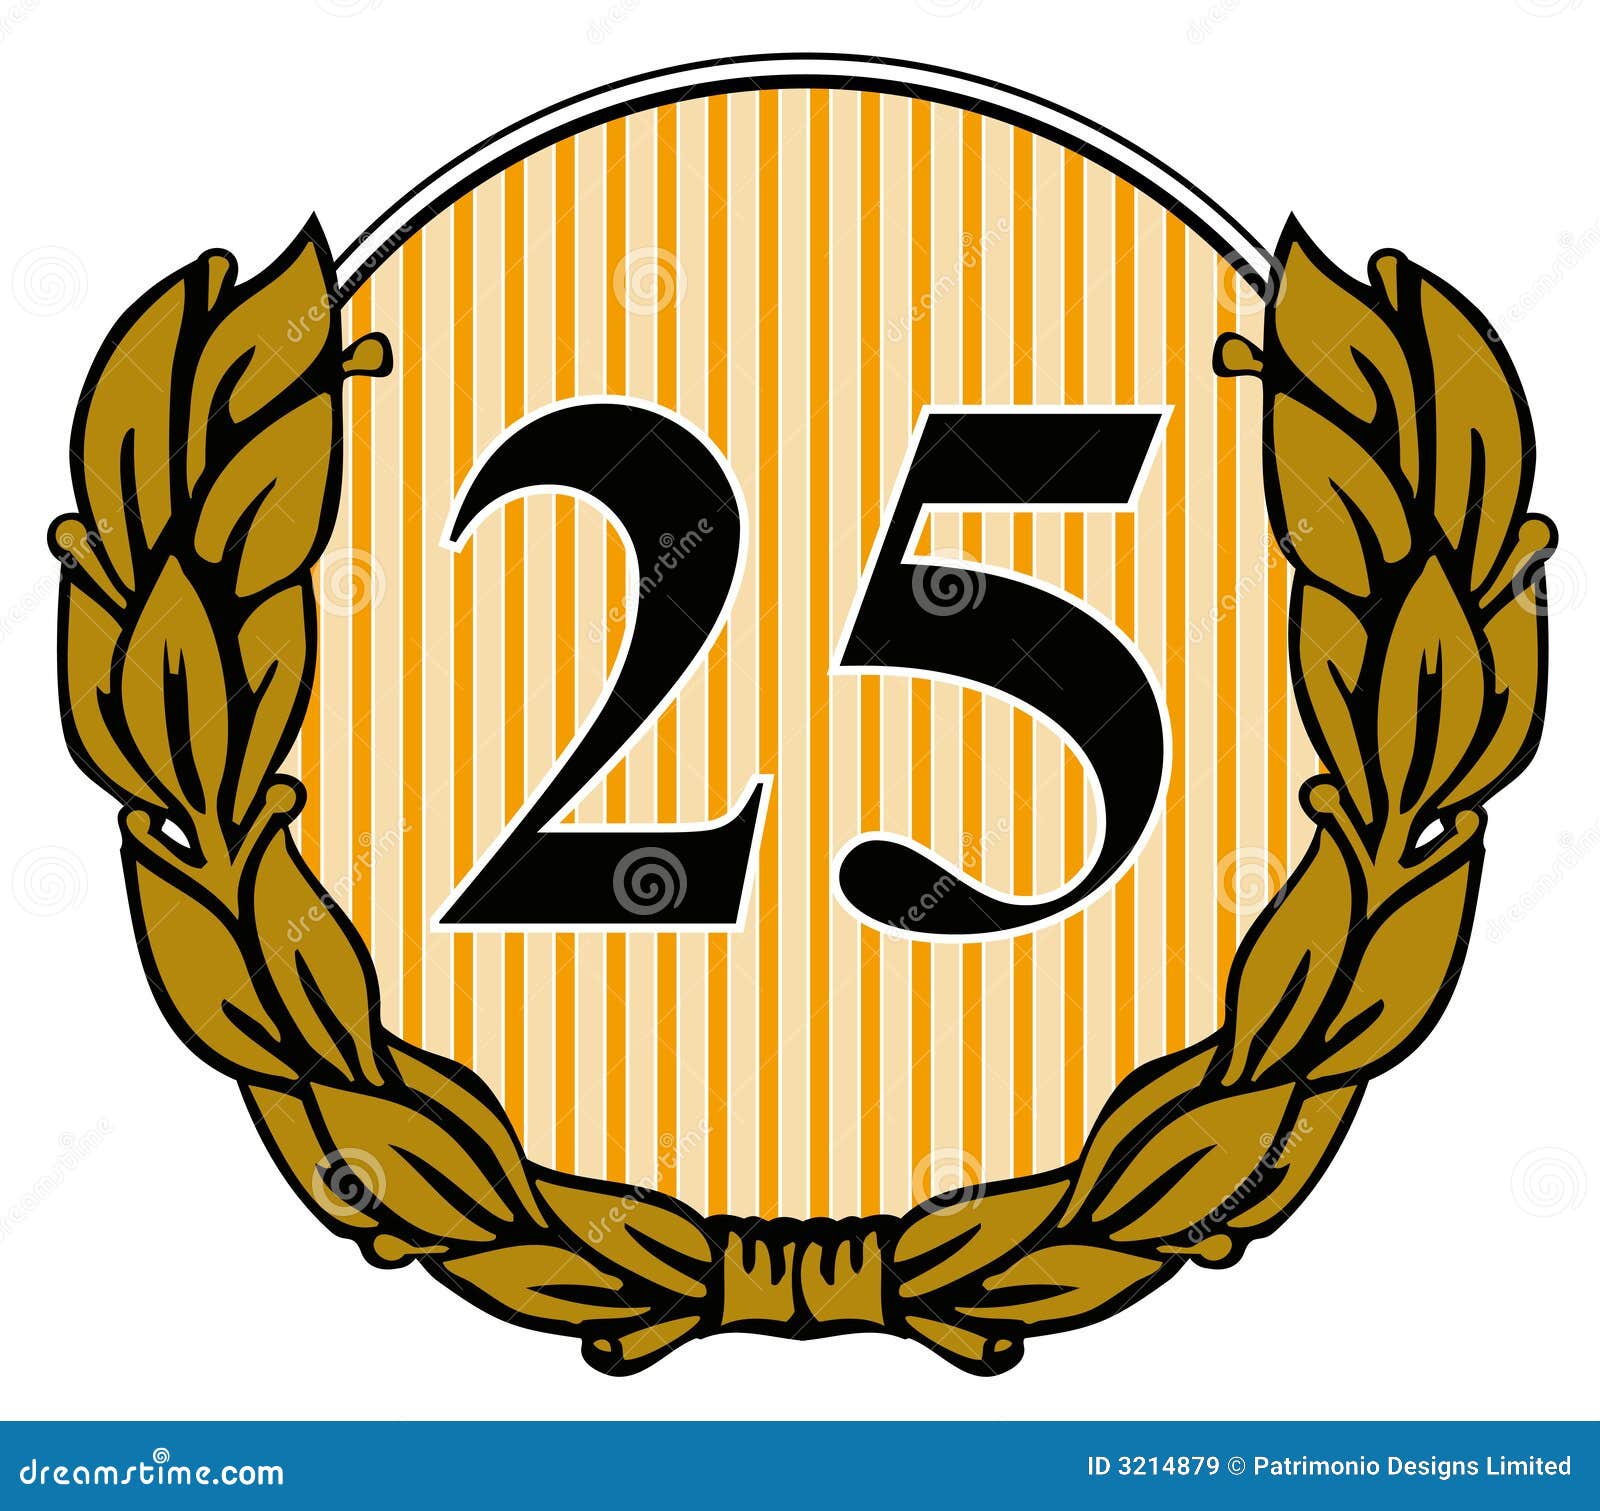 Number 25 with Laurel Leave Stock Illustration - Illustration of laurel ...